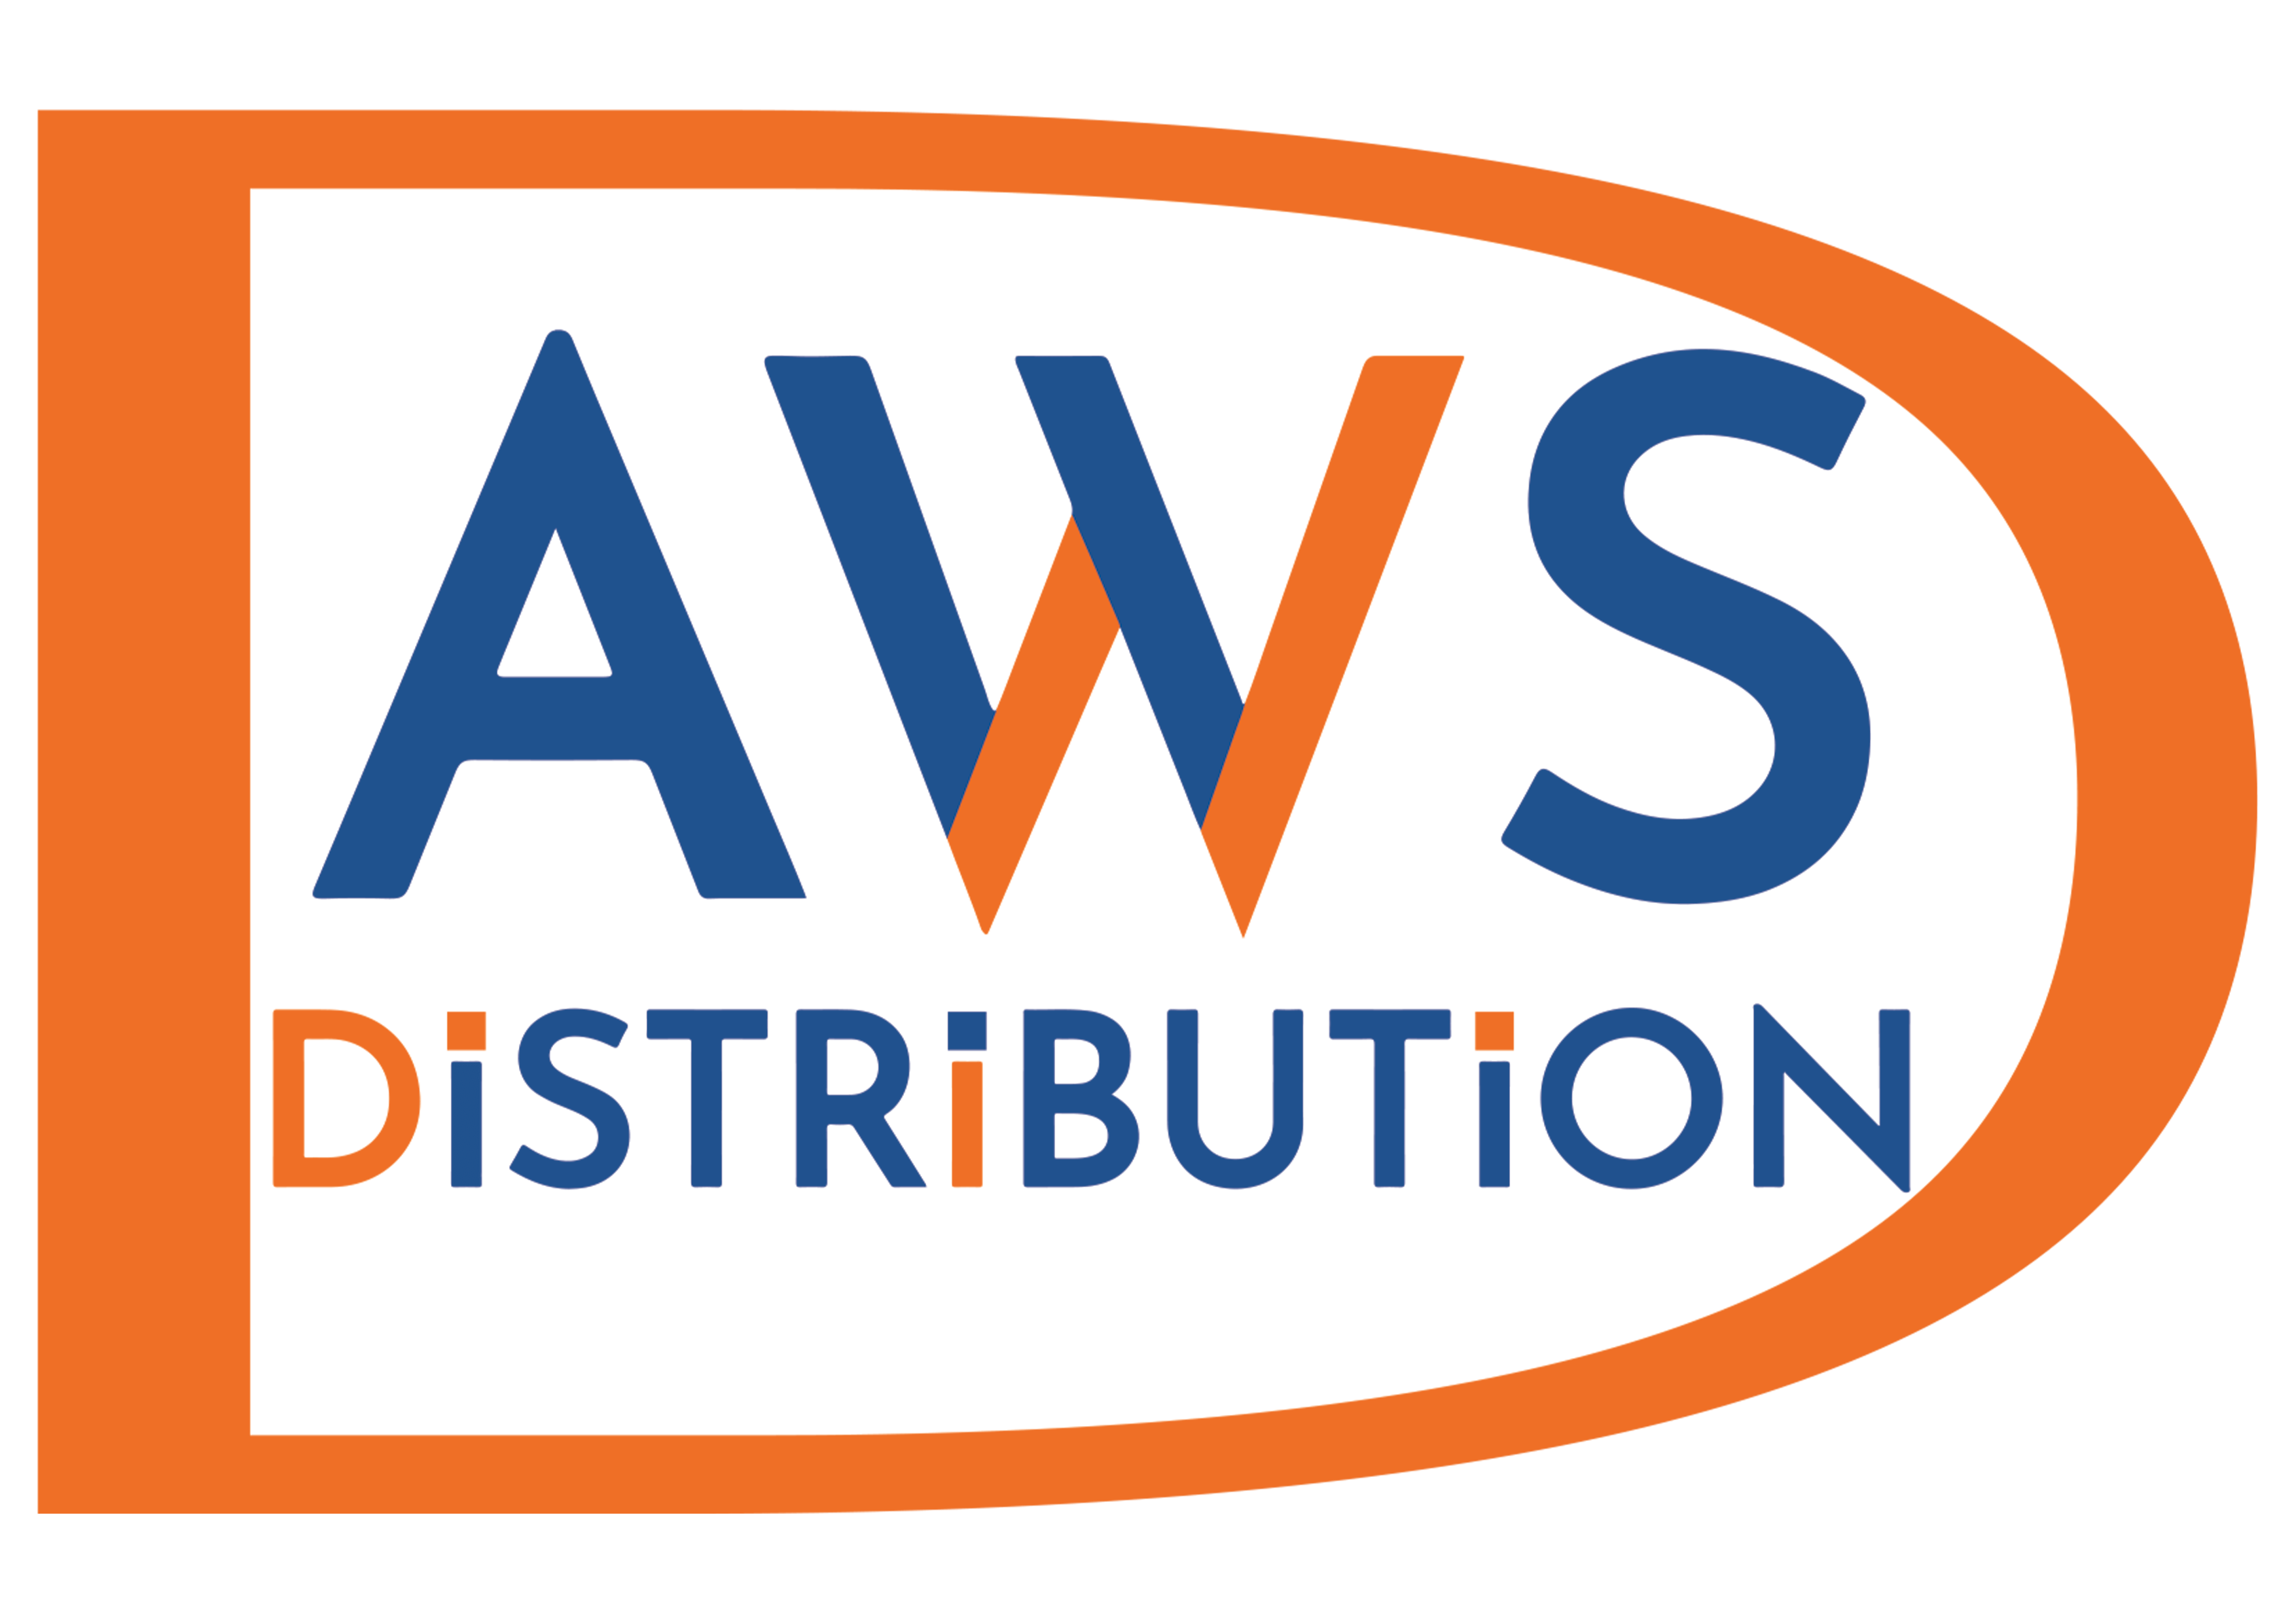 AWS Distribution